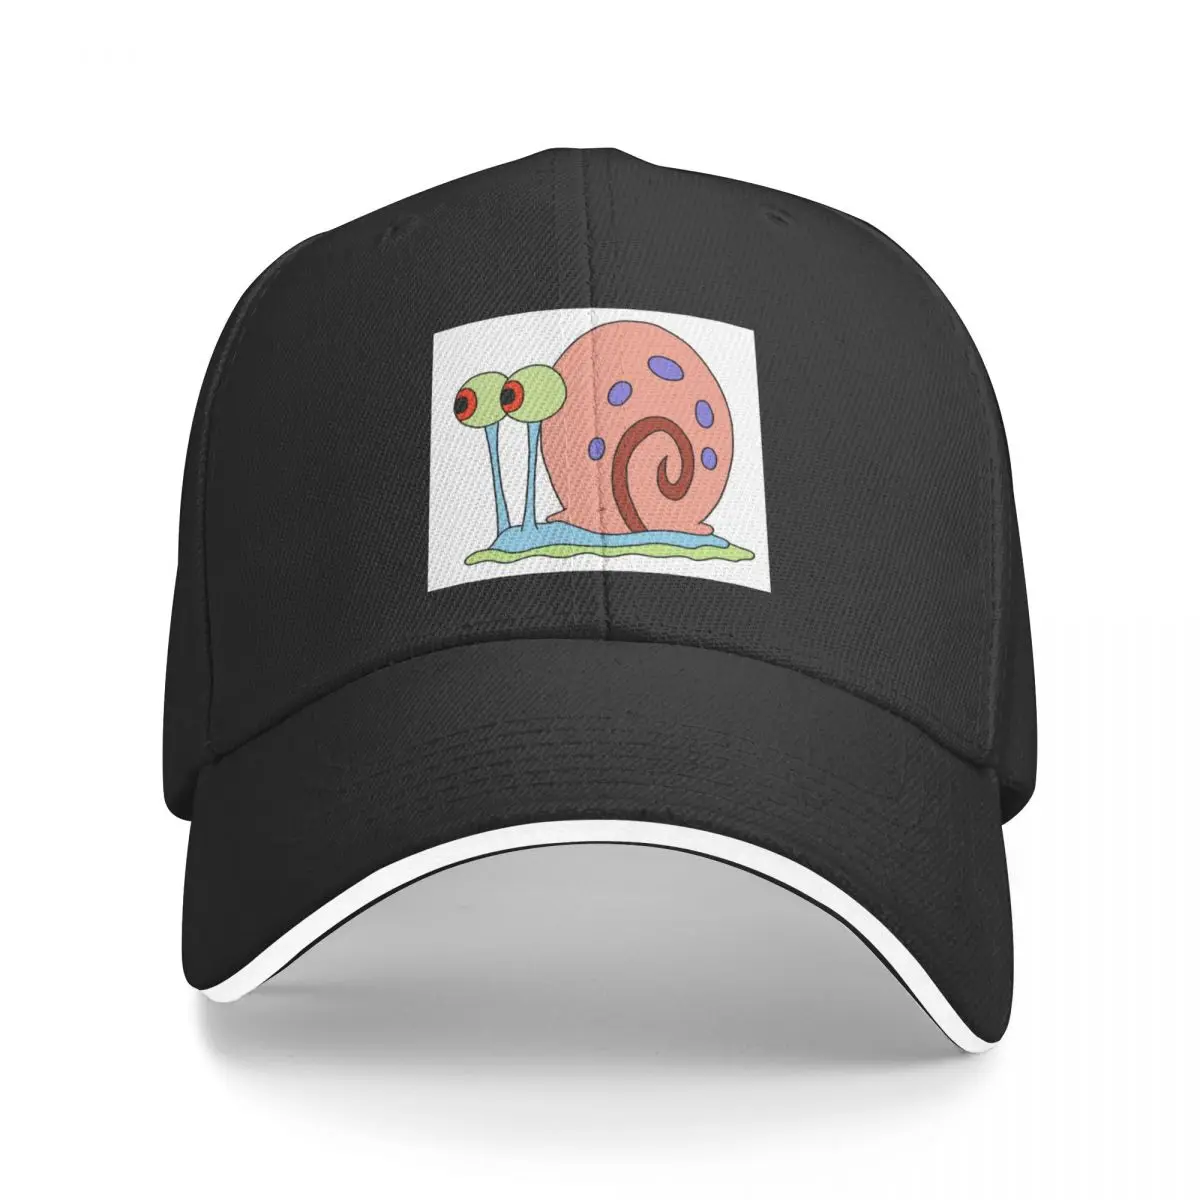 Бейсбольная кепка Gary the snail, солнцезащитная кепка, спортивная кепка, пушистая кепка, мужская и женская